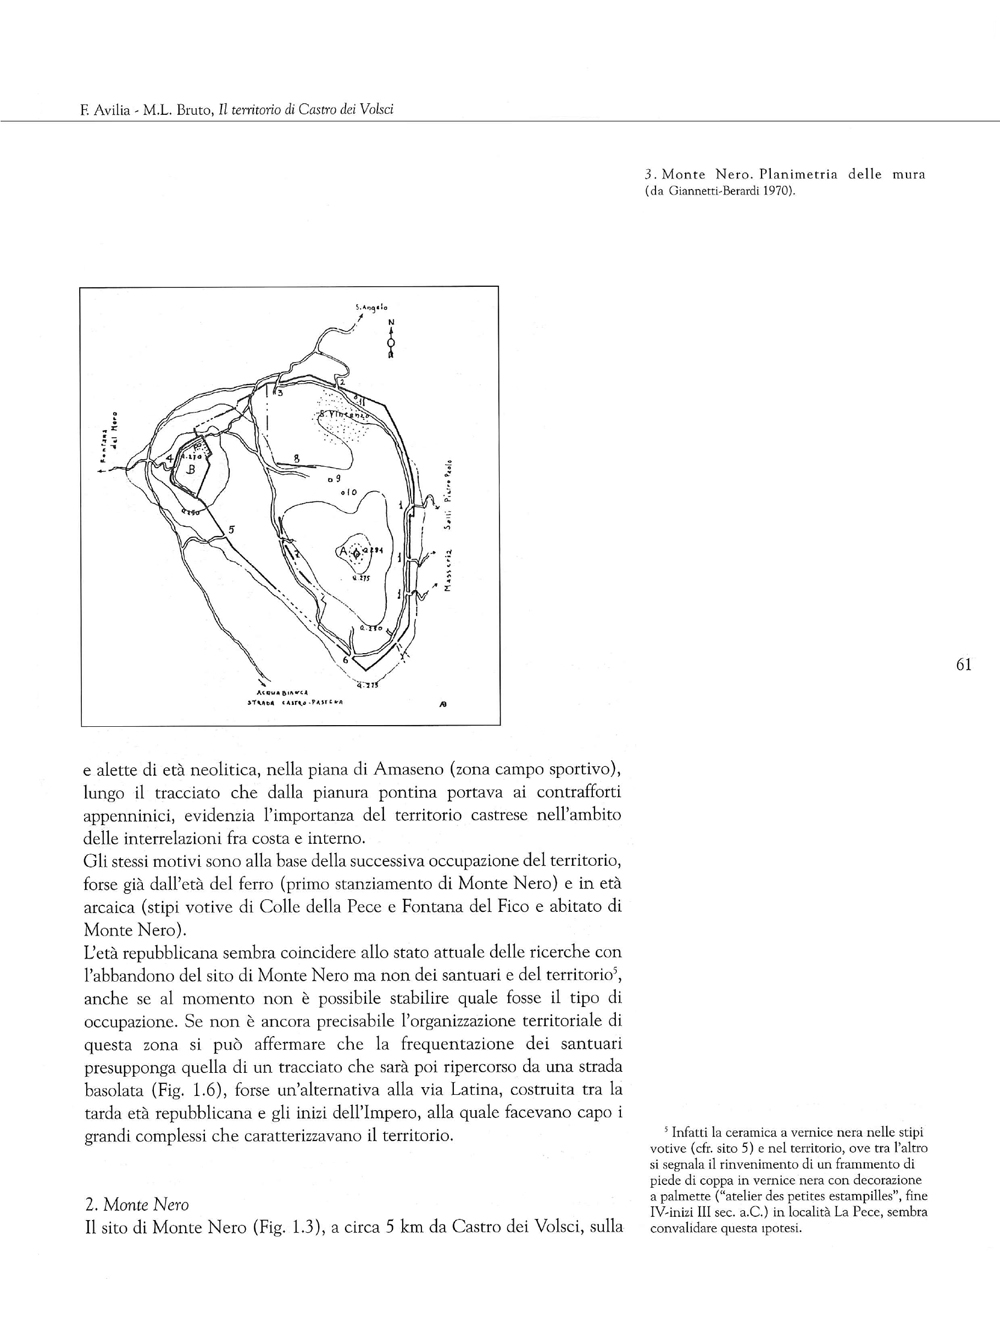 Terra dei Volsci. Annali del Museo Archeologico di Frosinone, 1998, 1, Avilia-Bruto